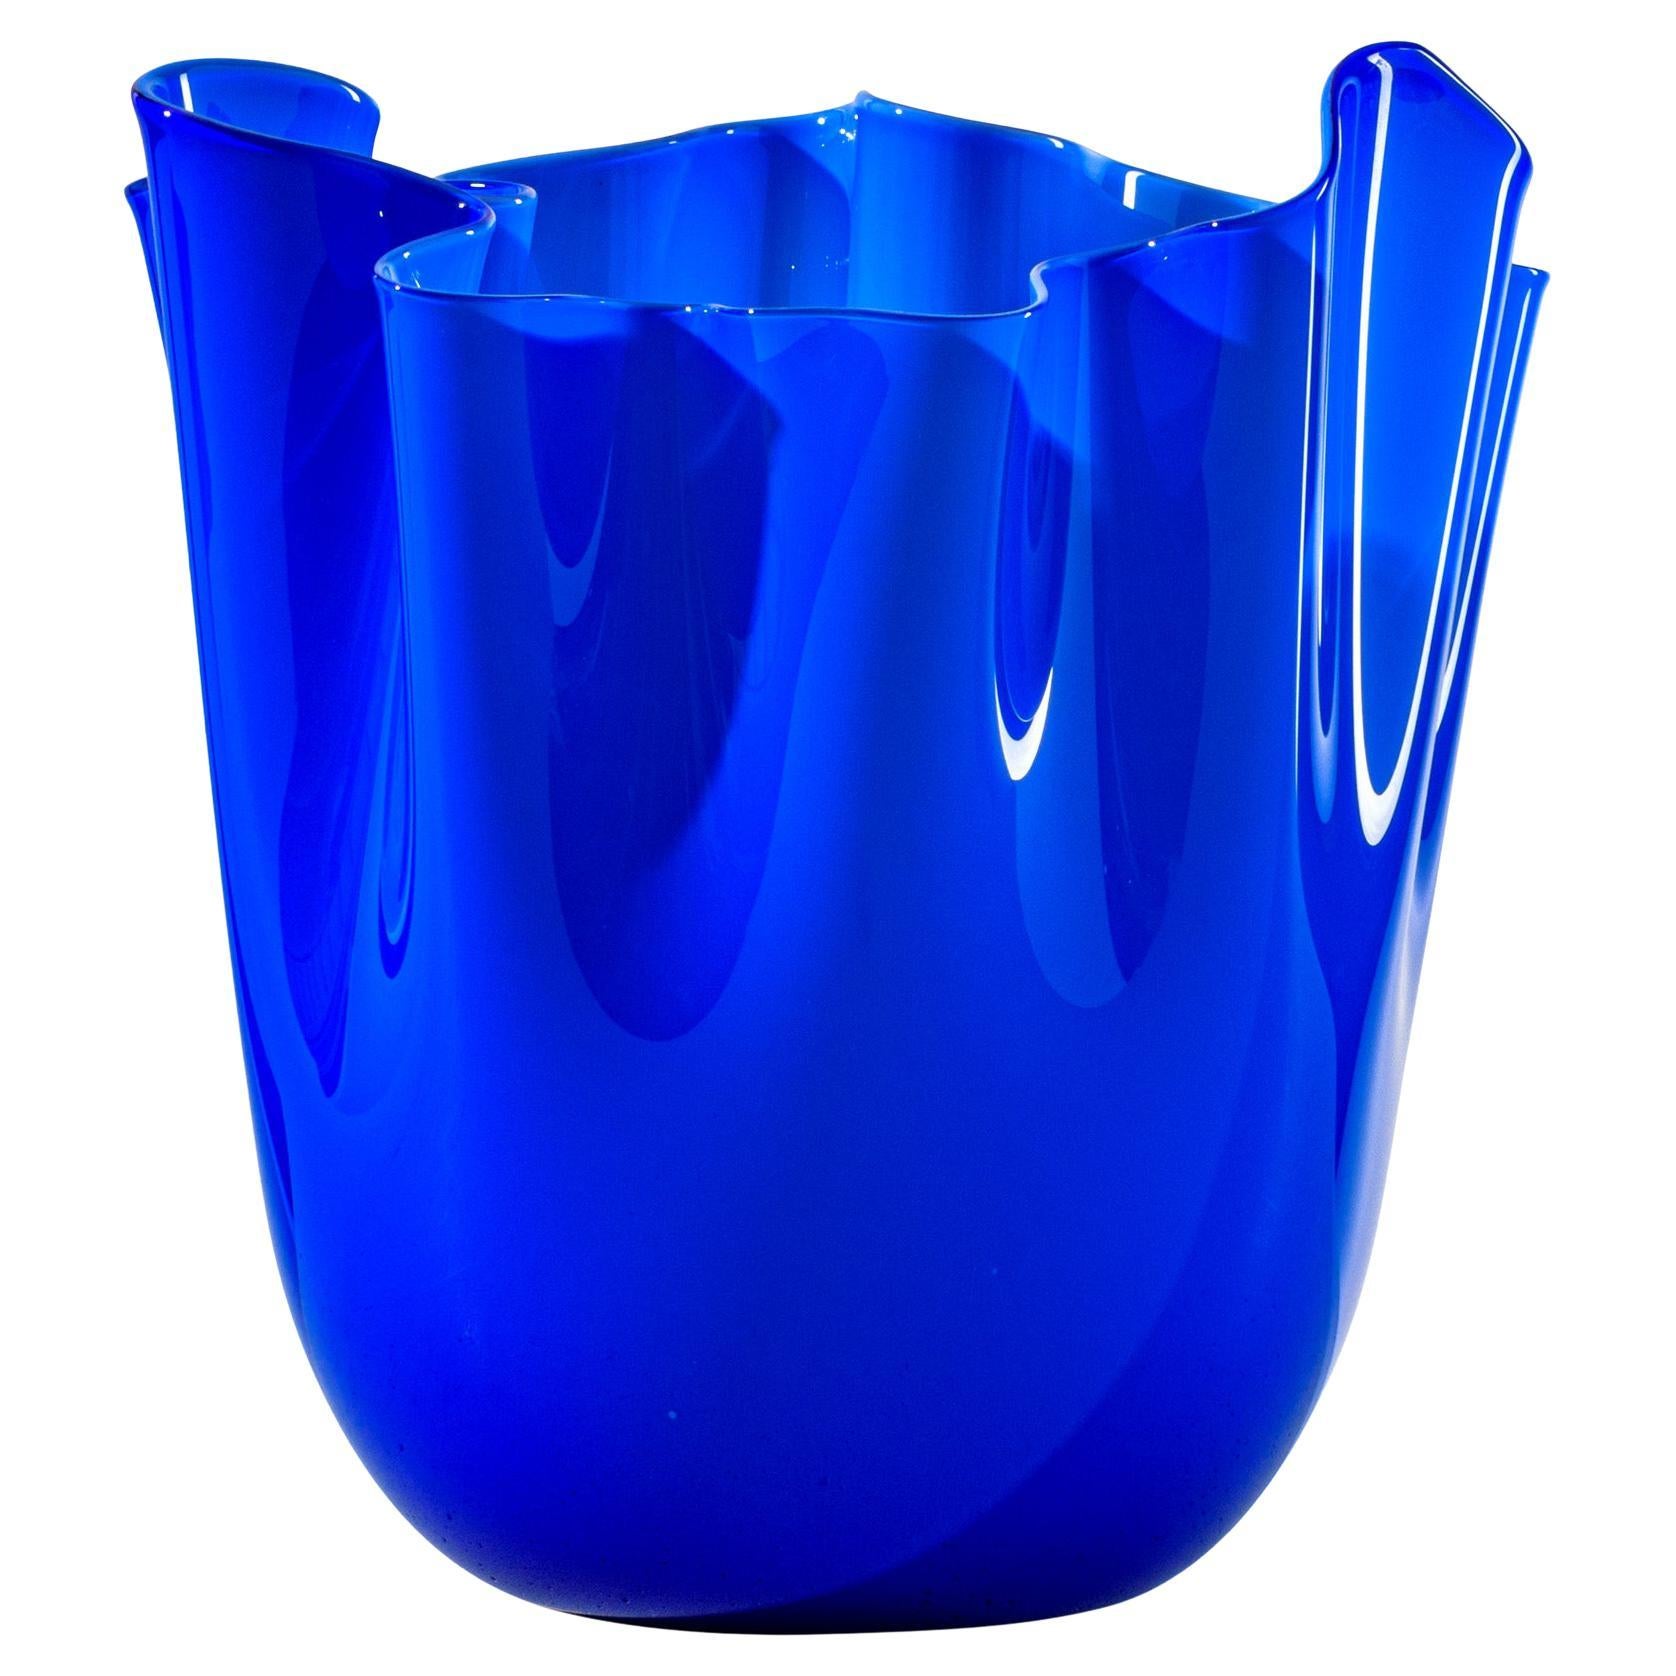 Fazzoletto Opalino Large Glass Vase in Sapphire by Fulvio Bianconi and Venini For Sale